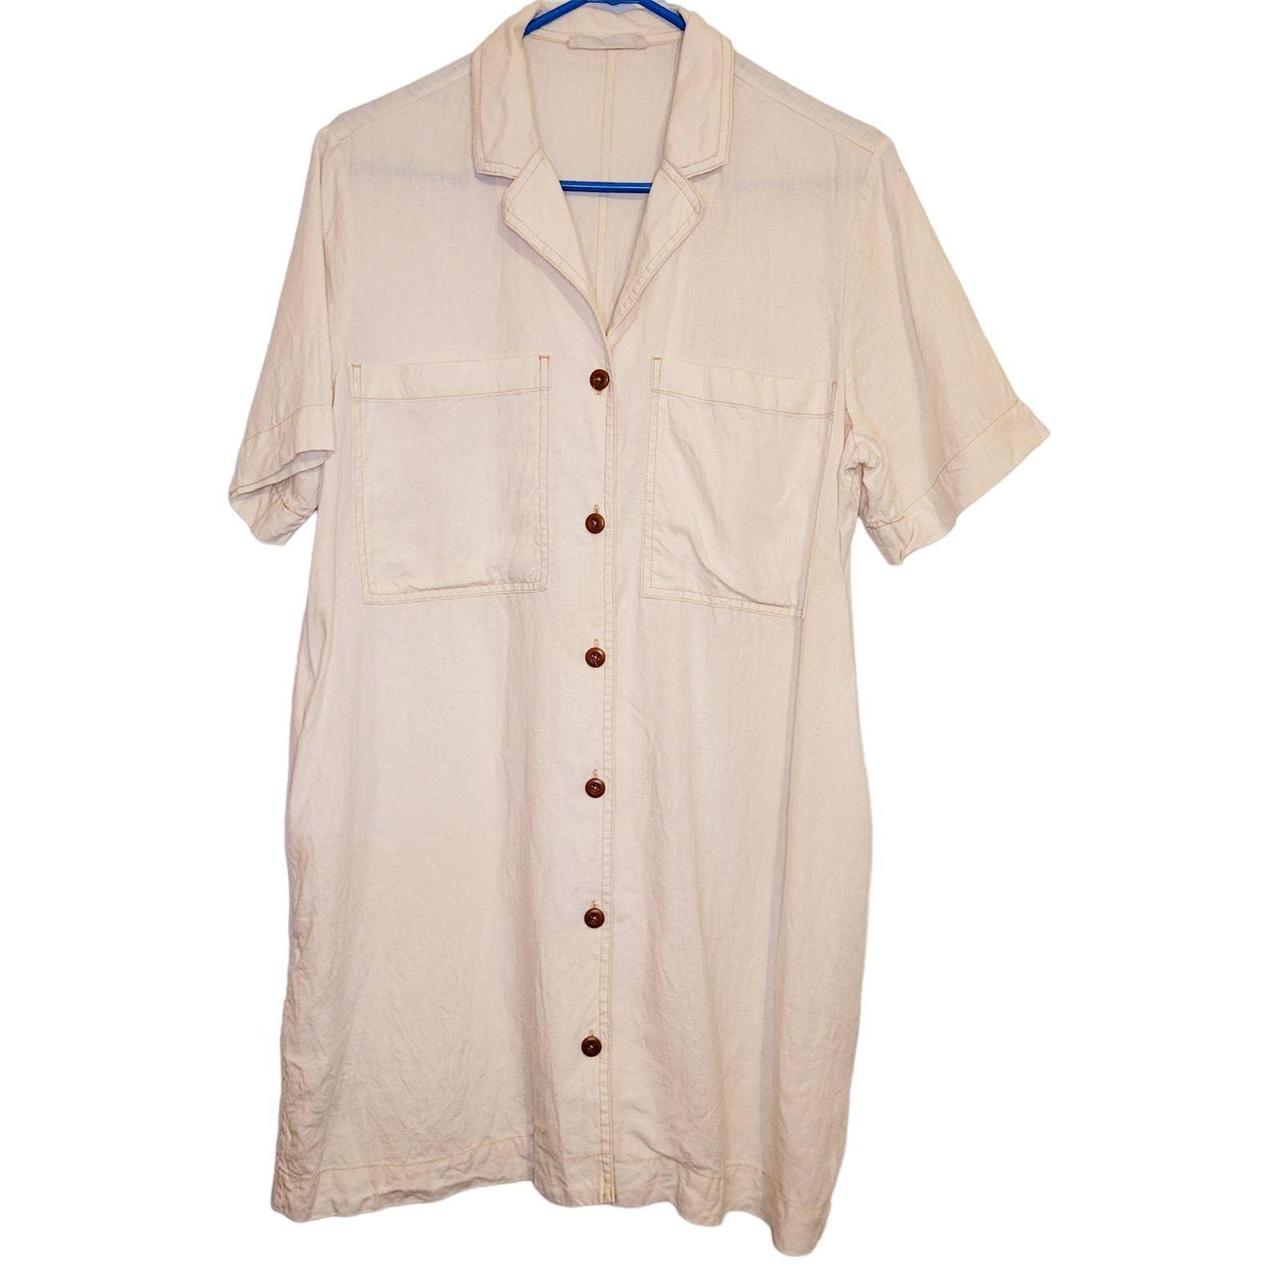 Everlane cream linen button up shirt dress Size... - Depop